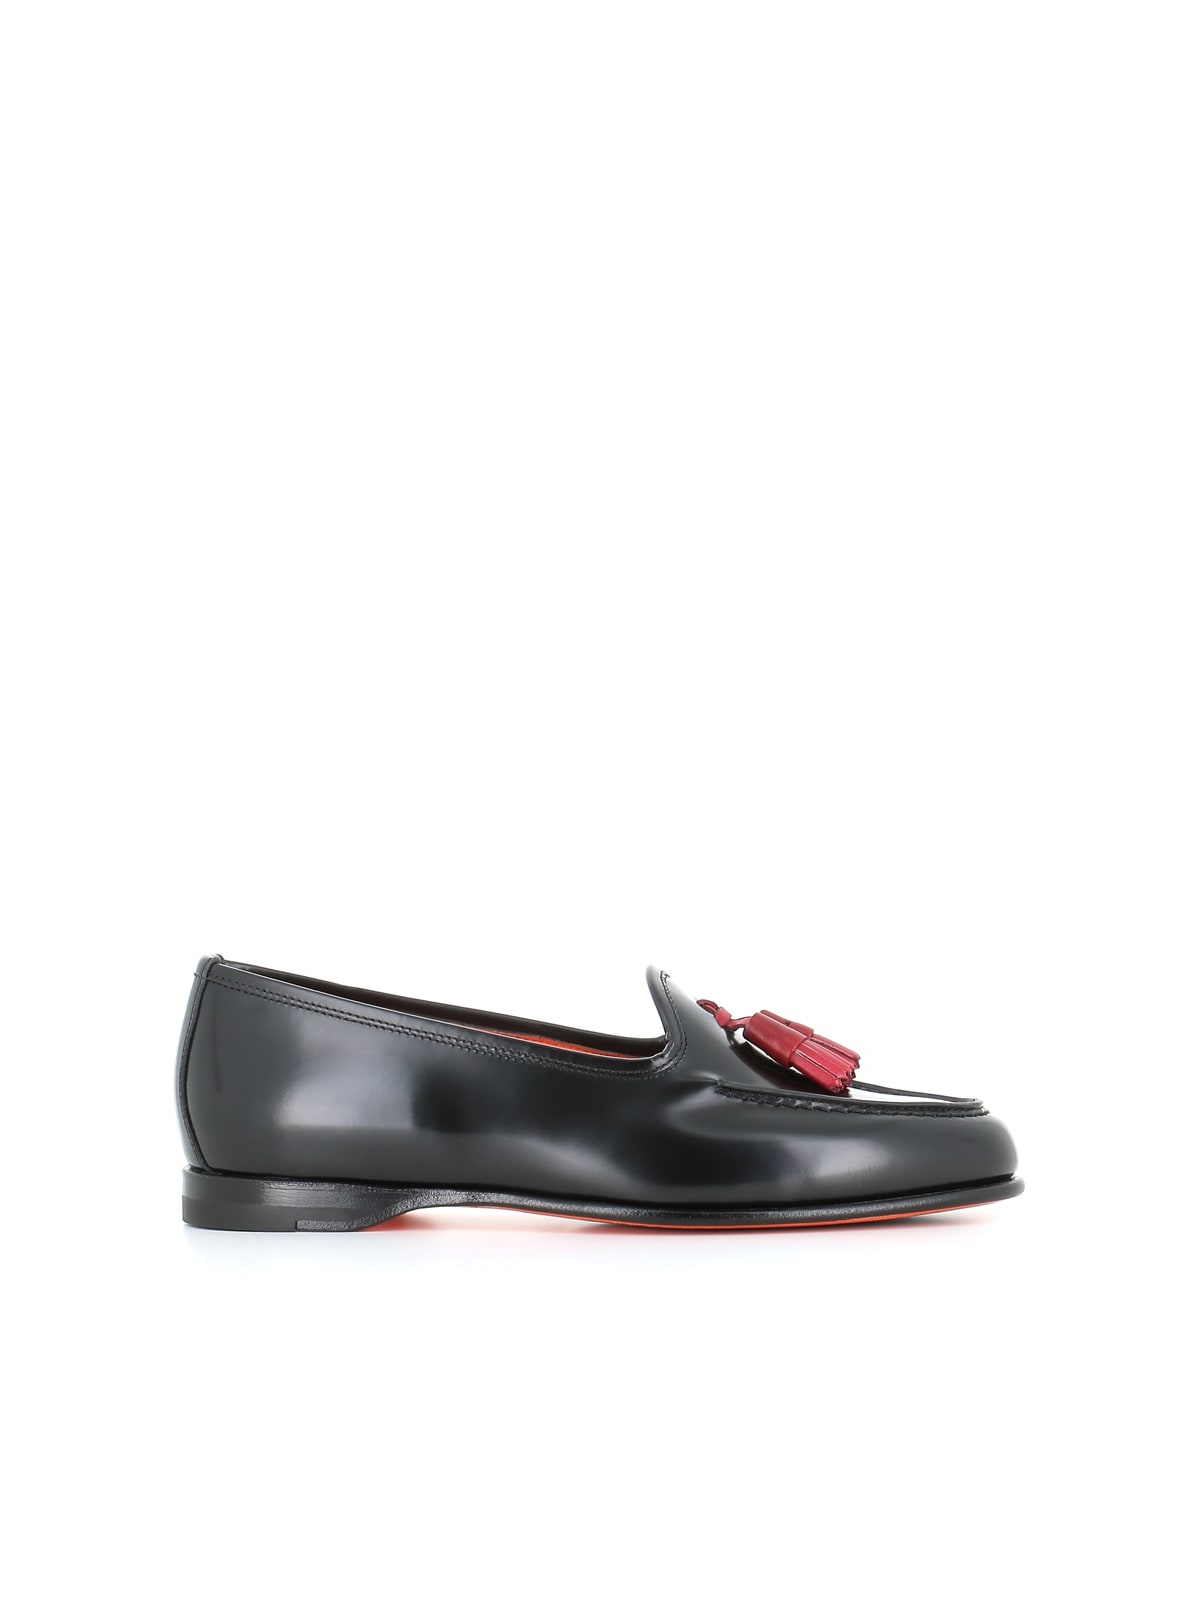 Santoni Tassel Loafer In Black/red